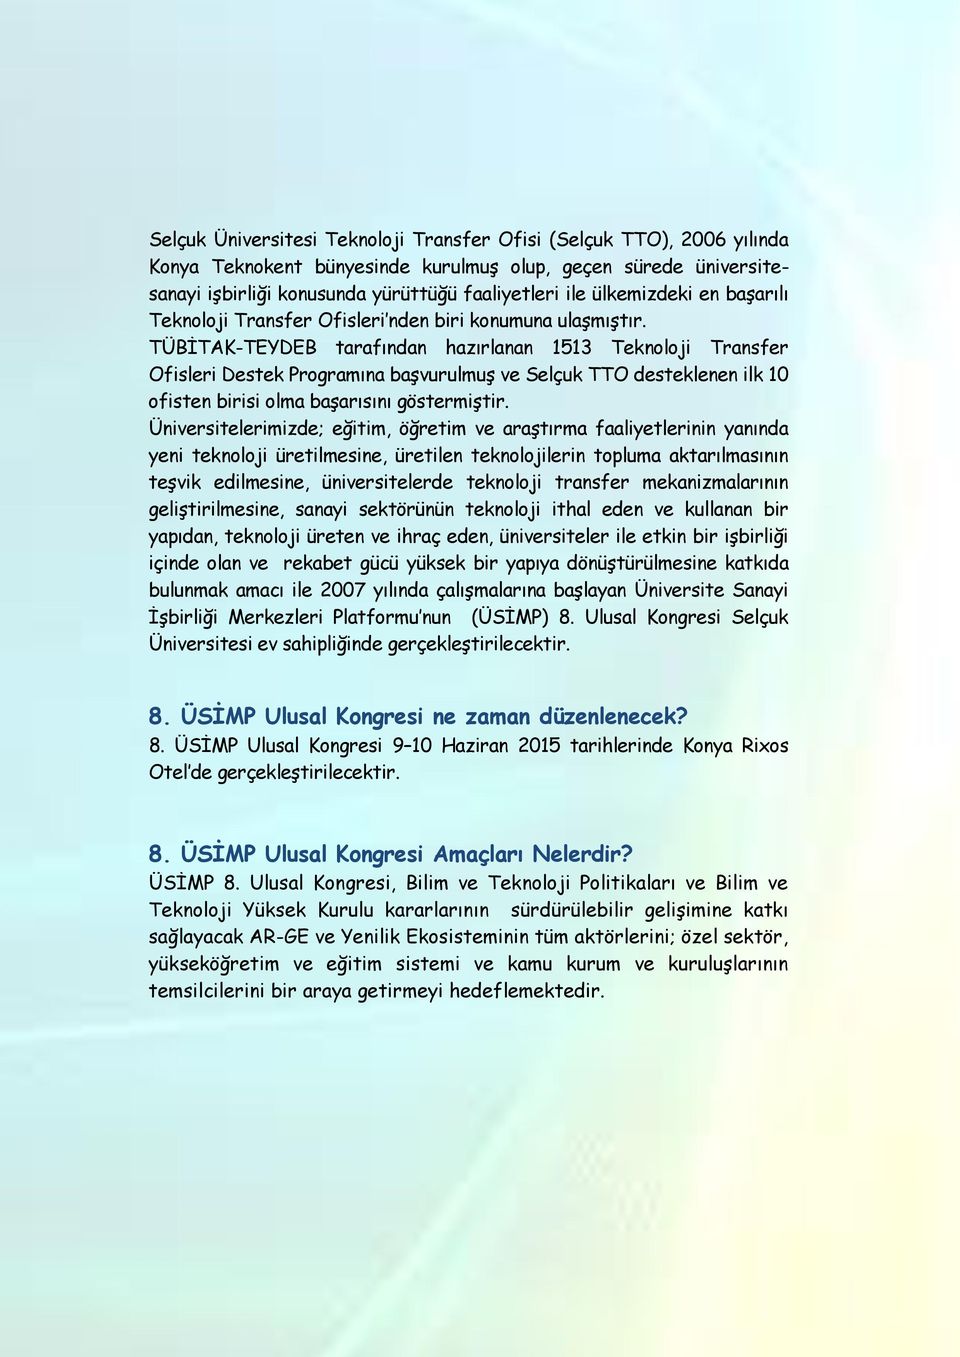 TÜBİTAK-TEYDEB tarafından hazırlanan 1513 Teknoloji Transfer Ofisleri Destek Programına başvurulmuş ve Selçuk TTO desteklenen ilk 10 ofisten birisi olma başarısını göstermiştir.